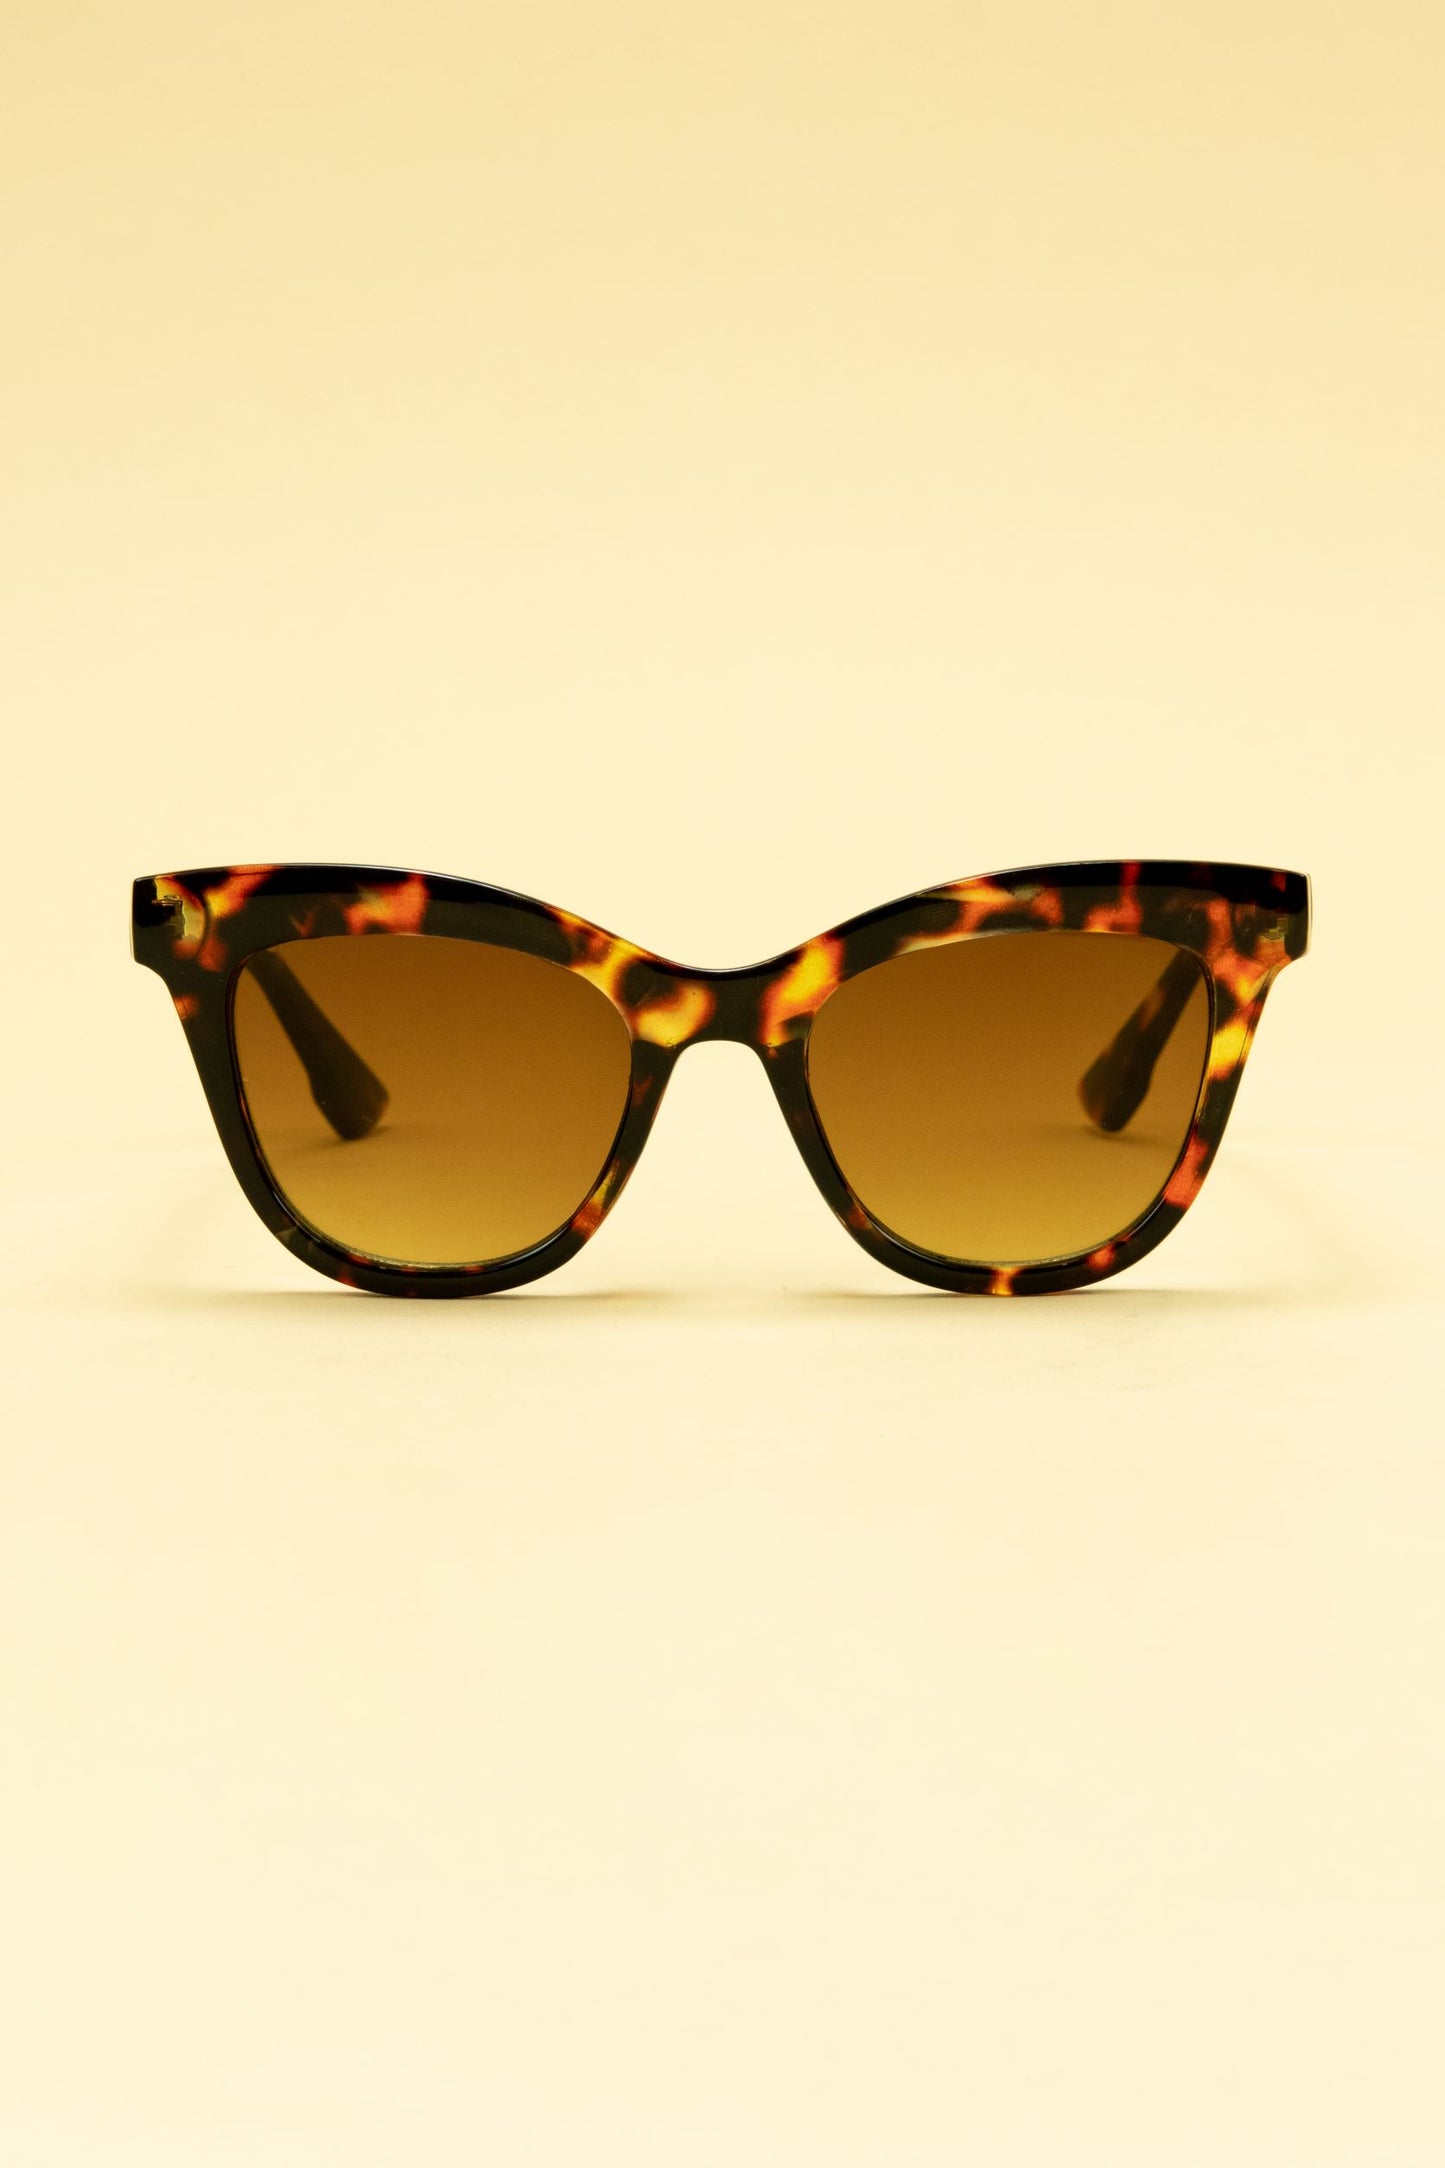 Nadia Limited Edition Ladies Sunglasses Tortiseshell